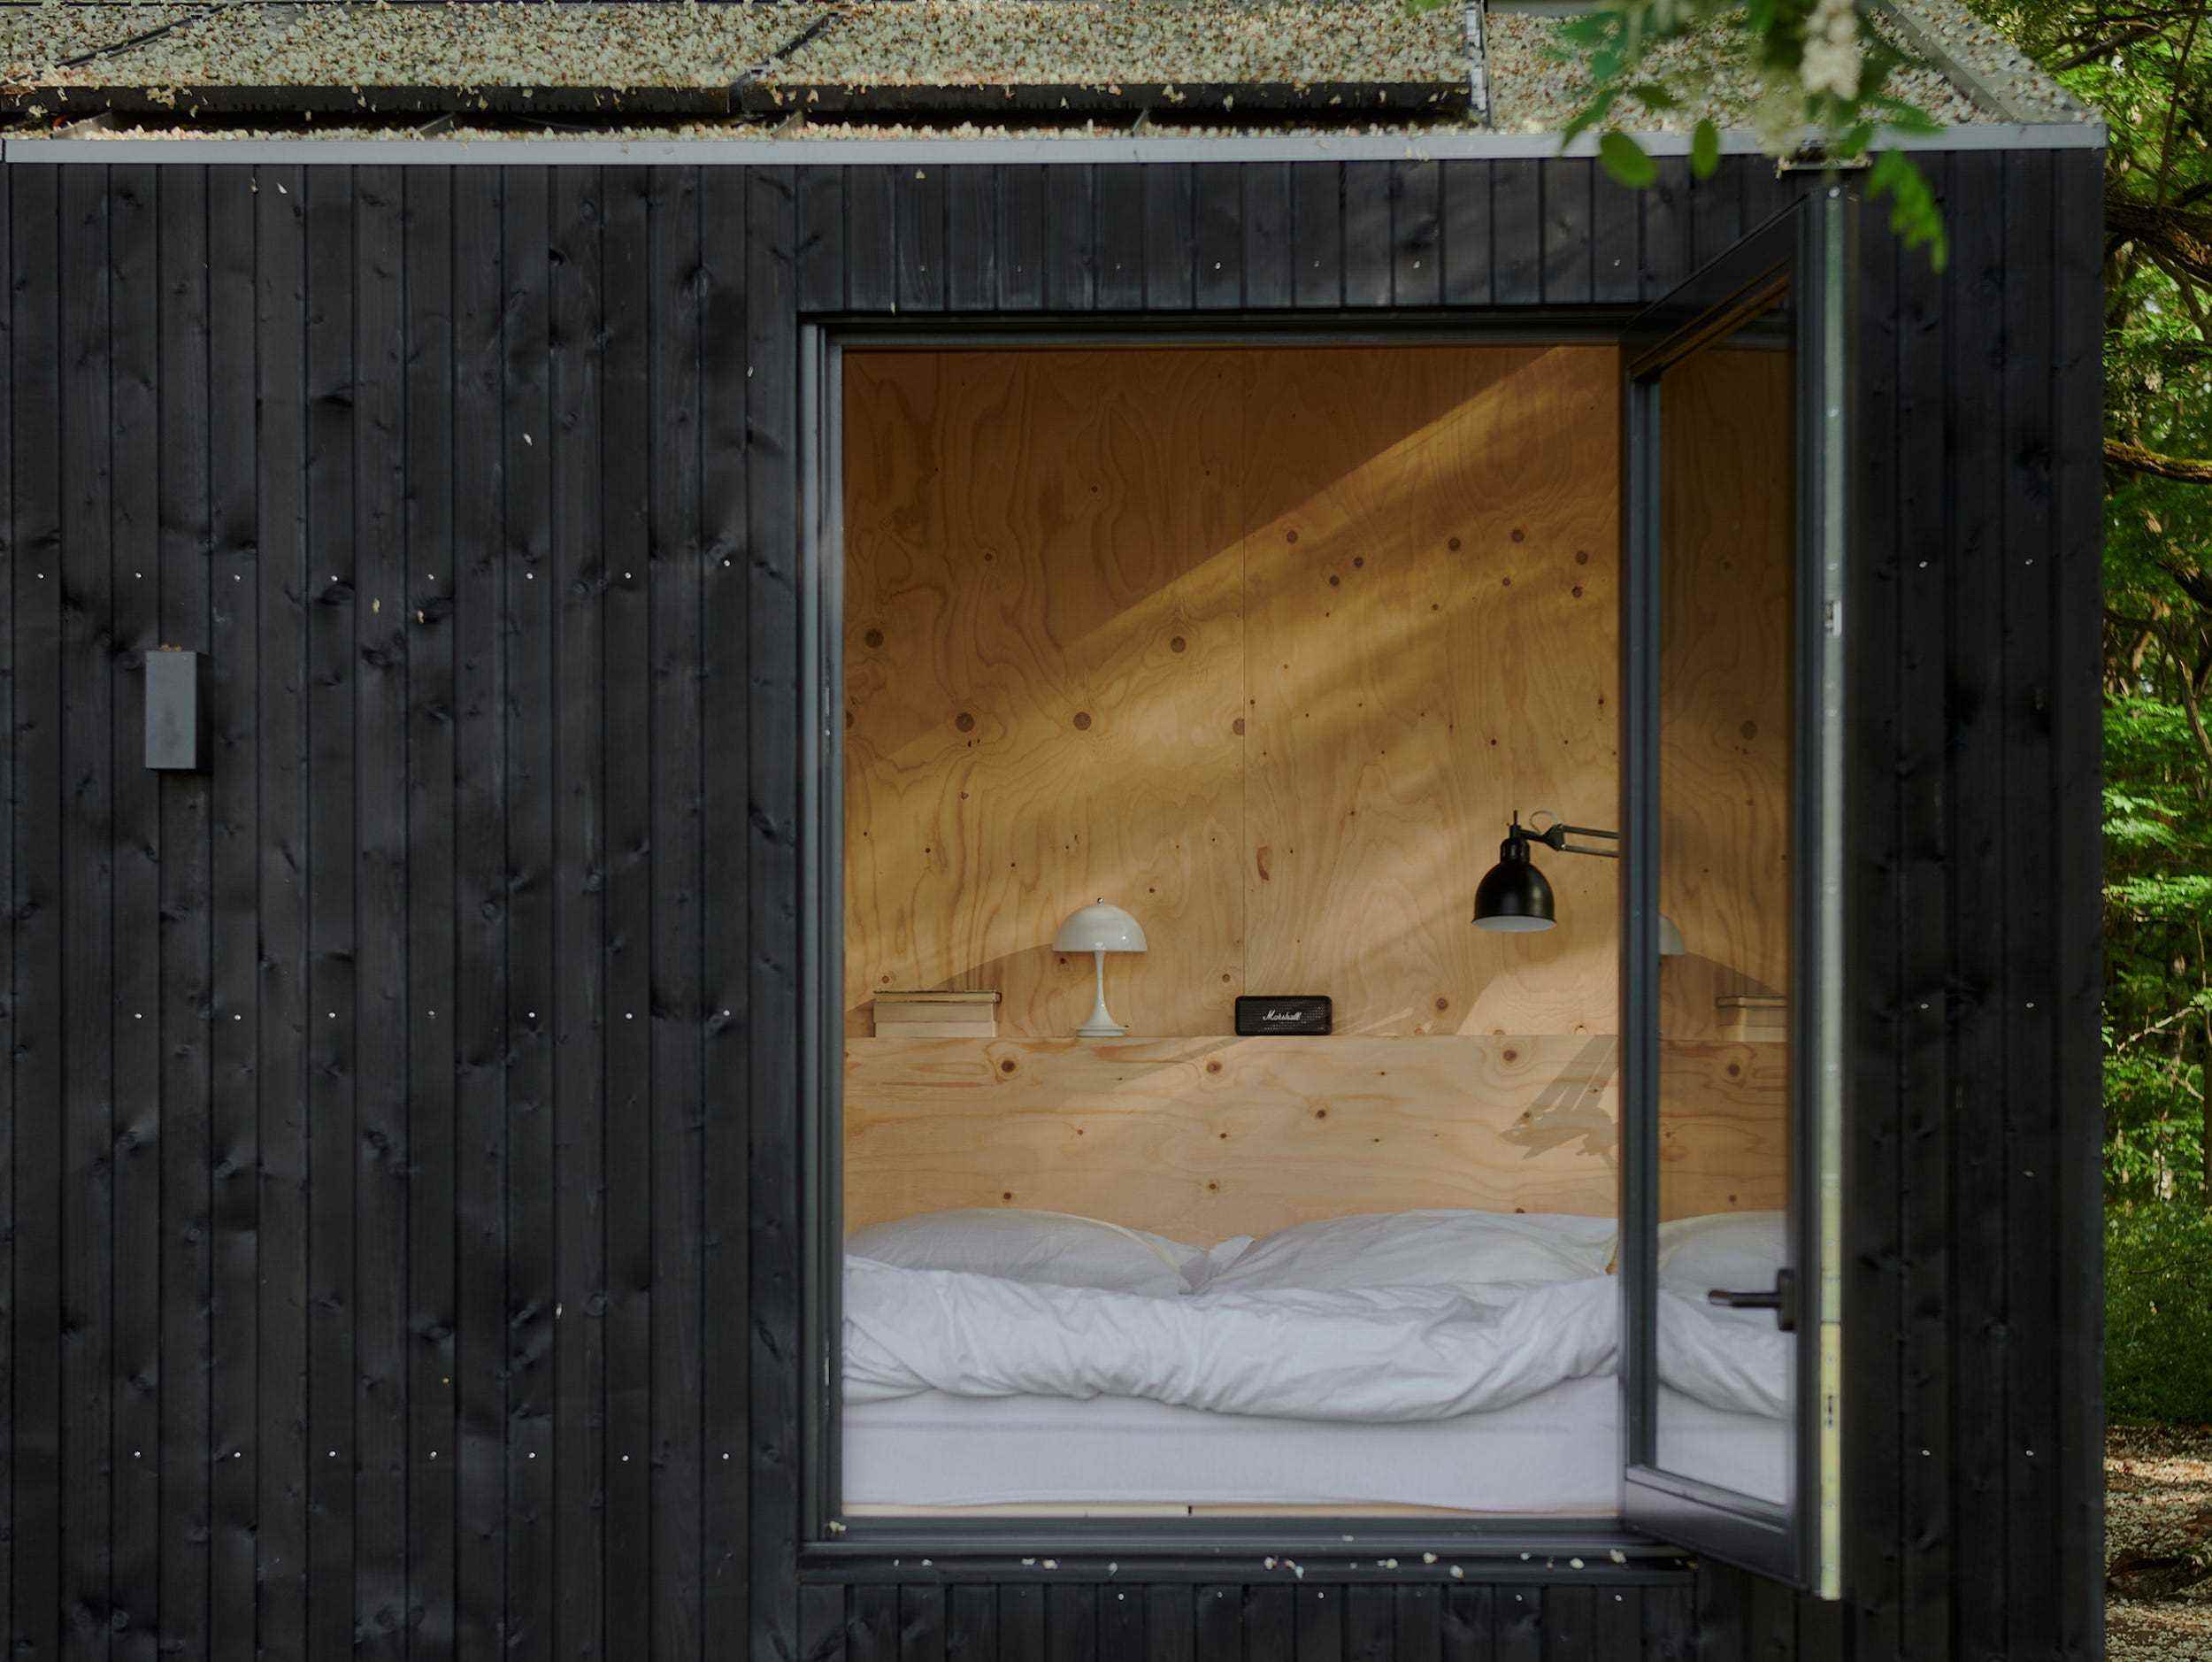 Ein Blick in eine Raus-Hütte mit einem Bett in der Nähe eines offenen Fensters.